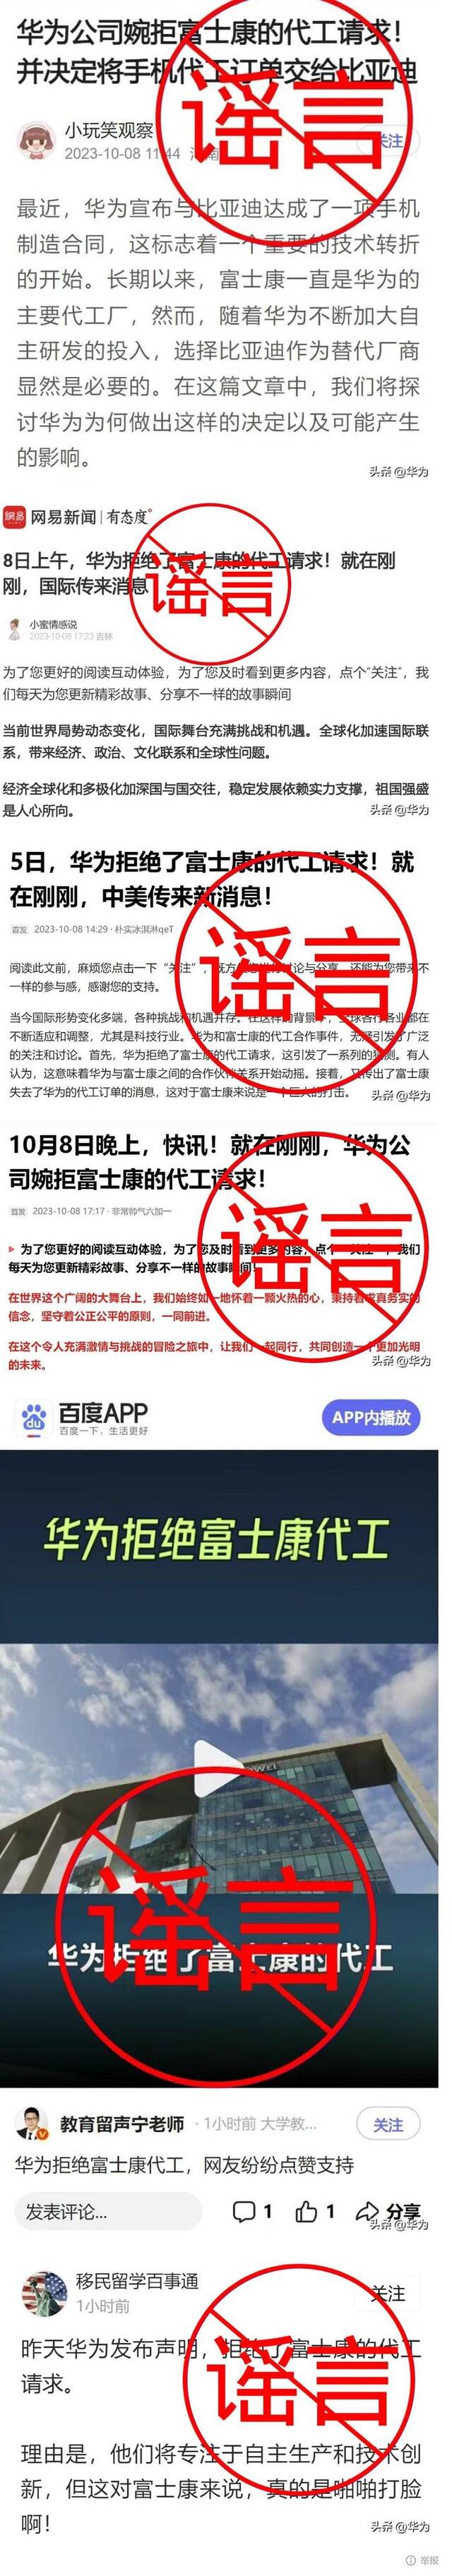 华为：网传“华为发布声明拒绝富士康代工请求”纯属造谣